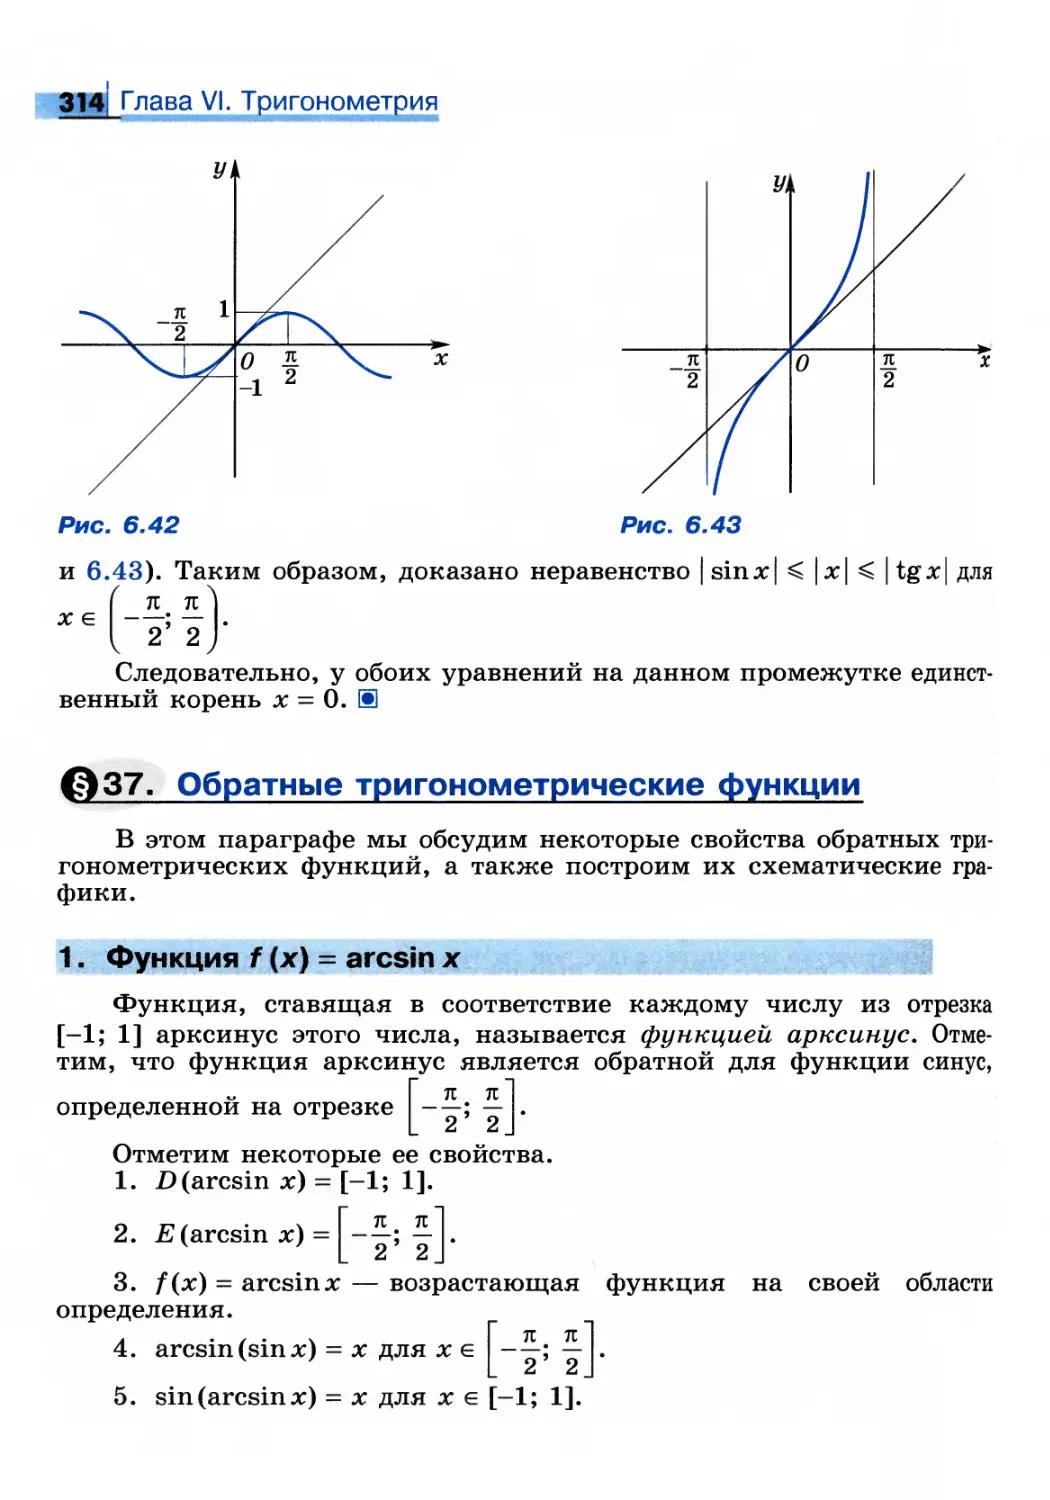 § 37. Обратные тригонометрические функции